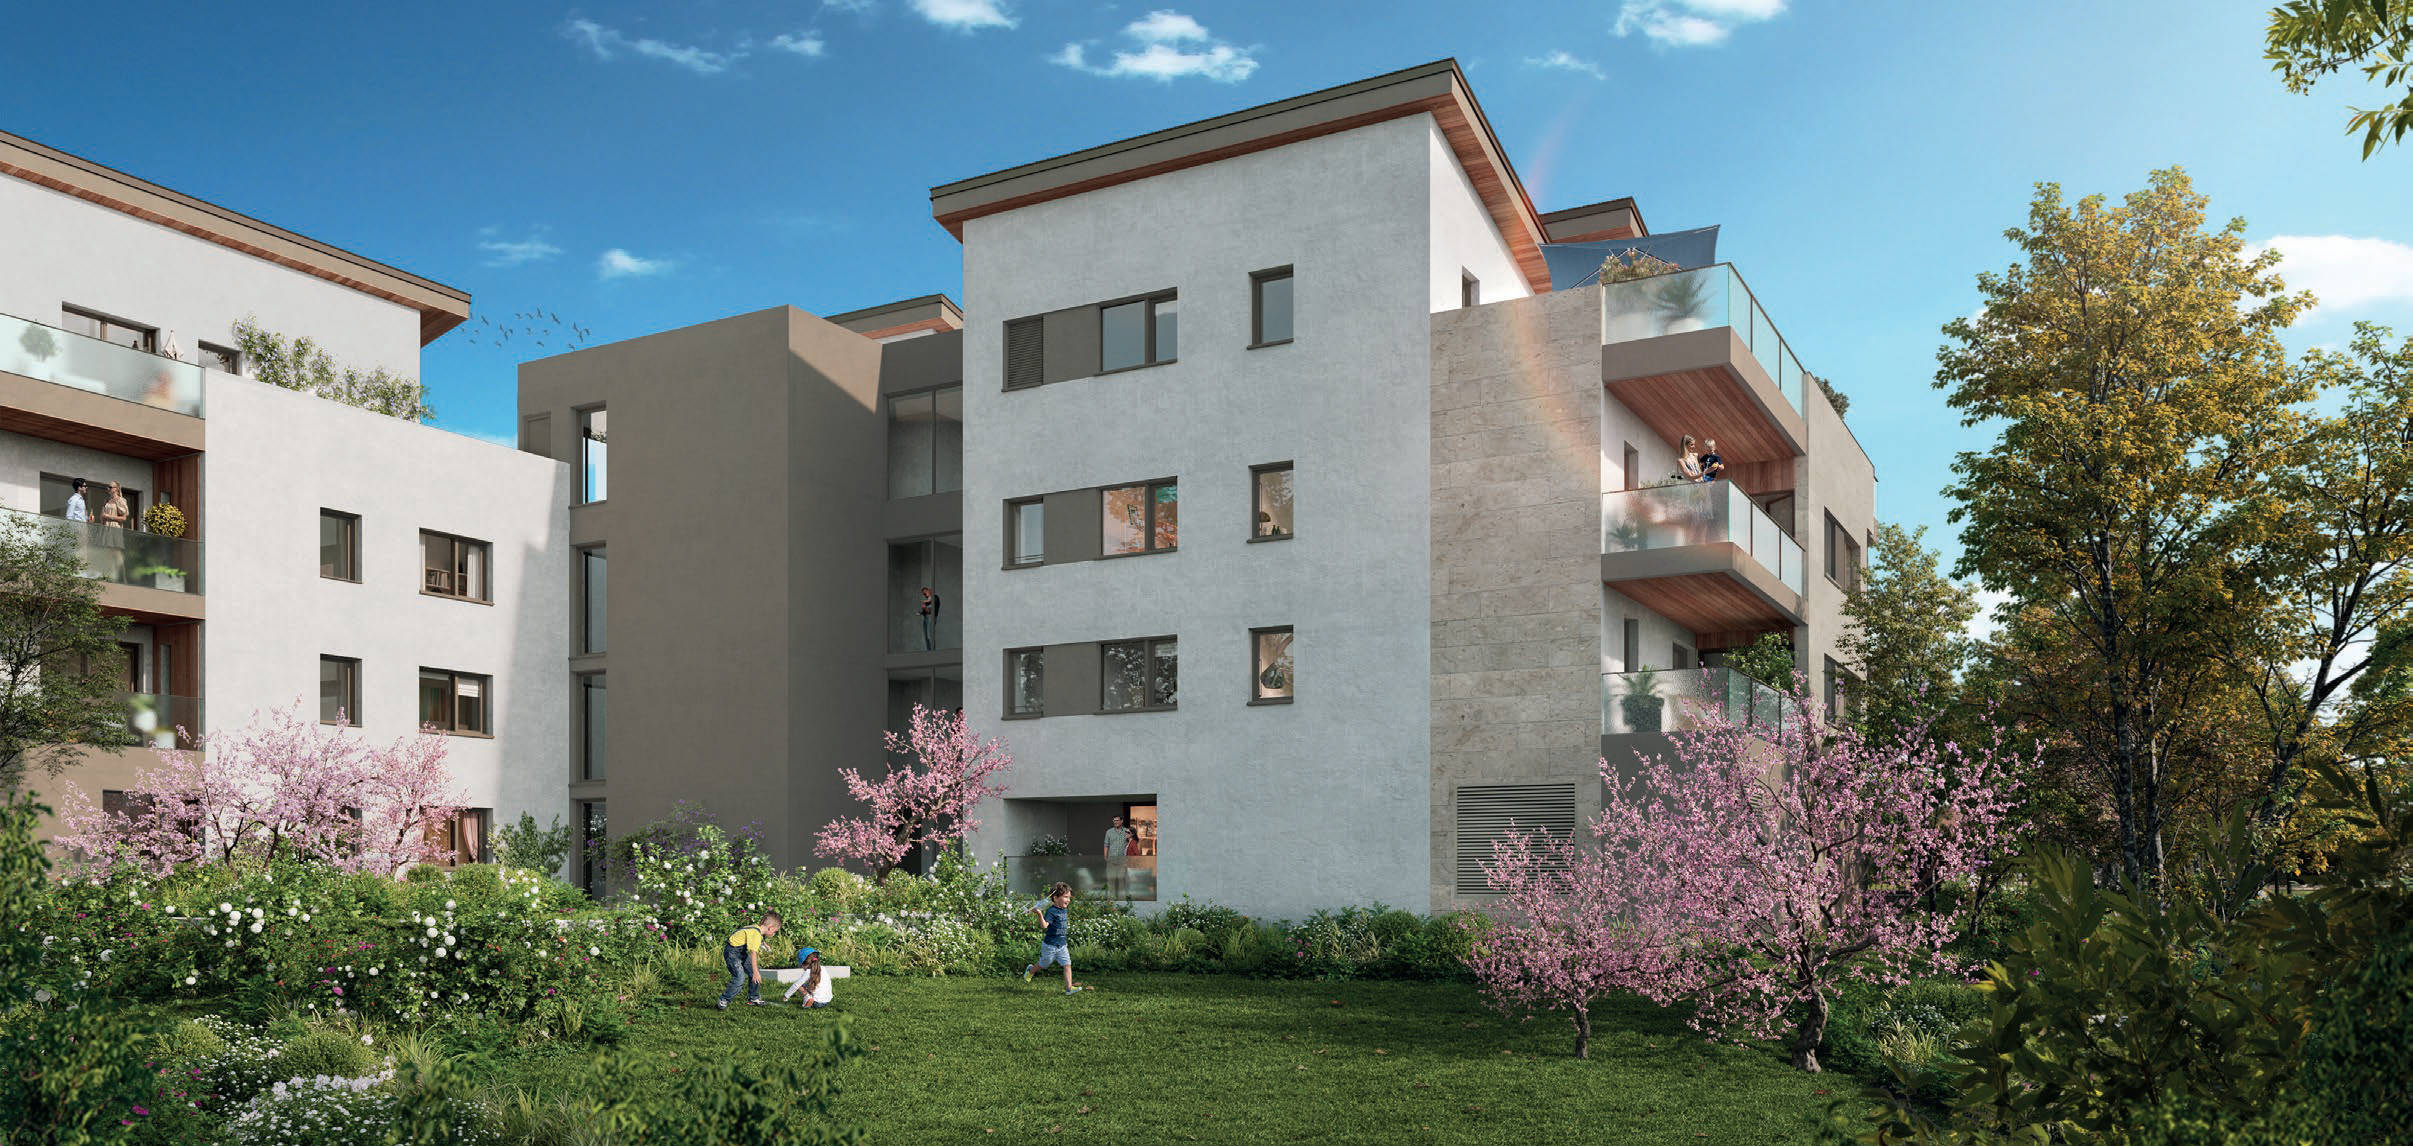 Programme immobilier neuf Sainte-Foy-lès-Lyon en lisière de Lyon 5ème